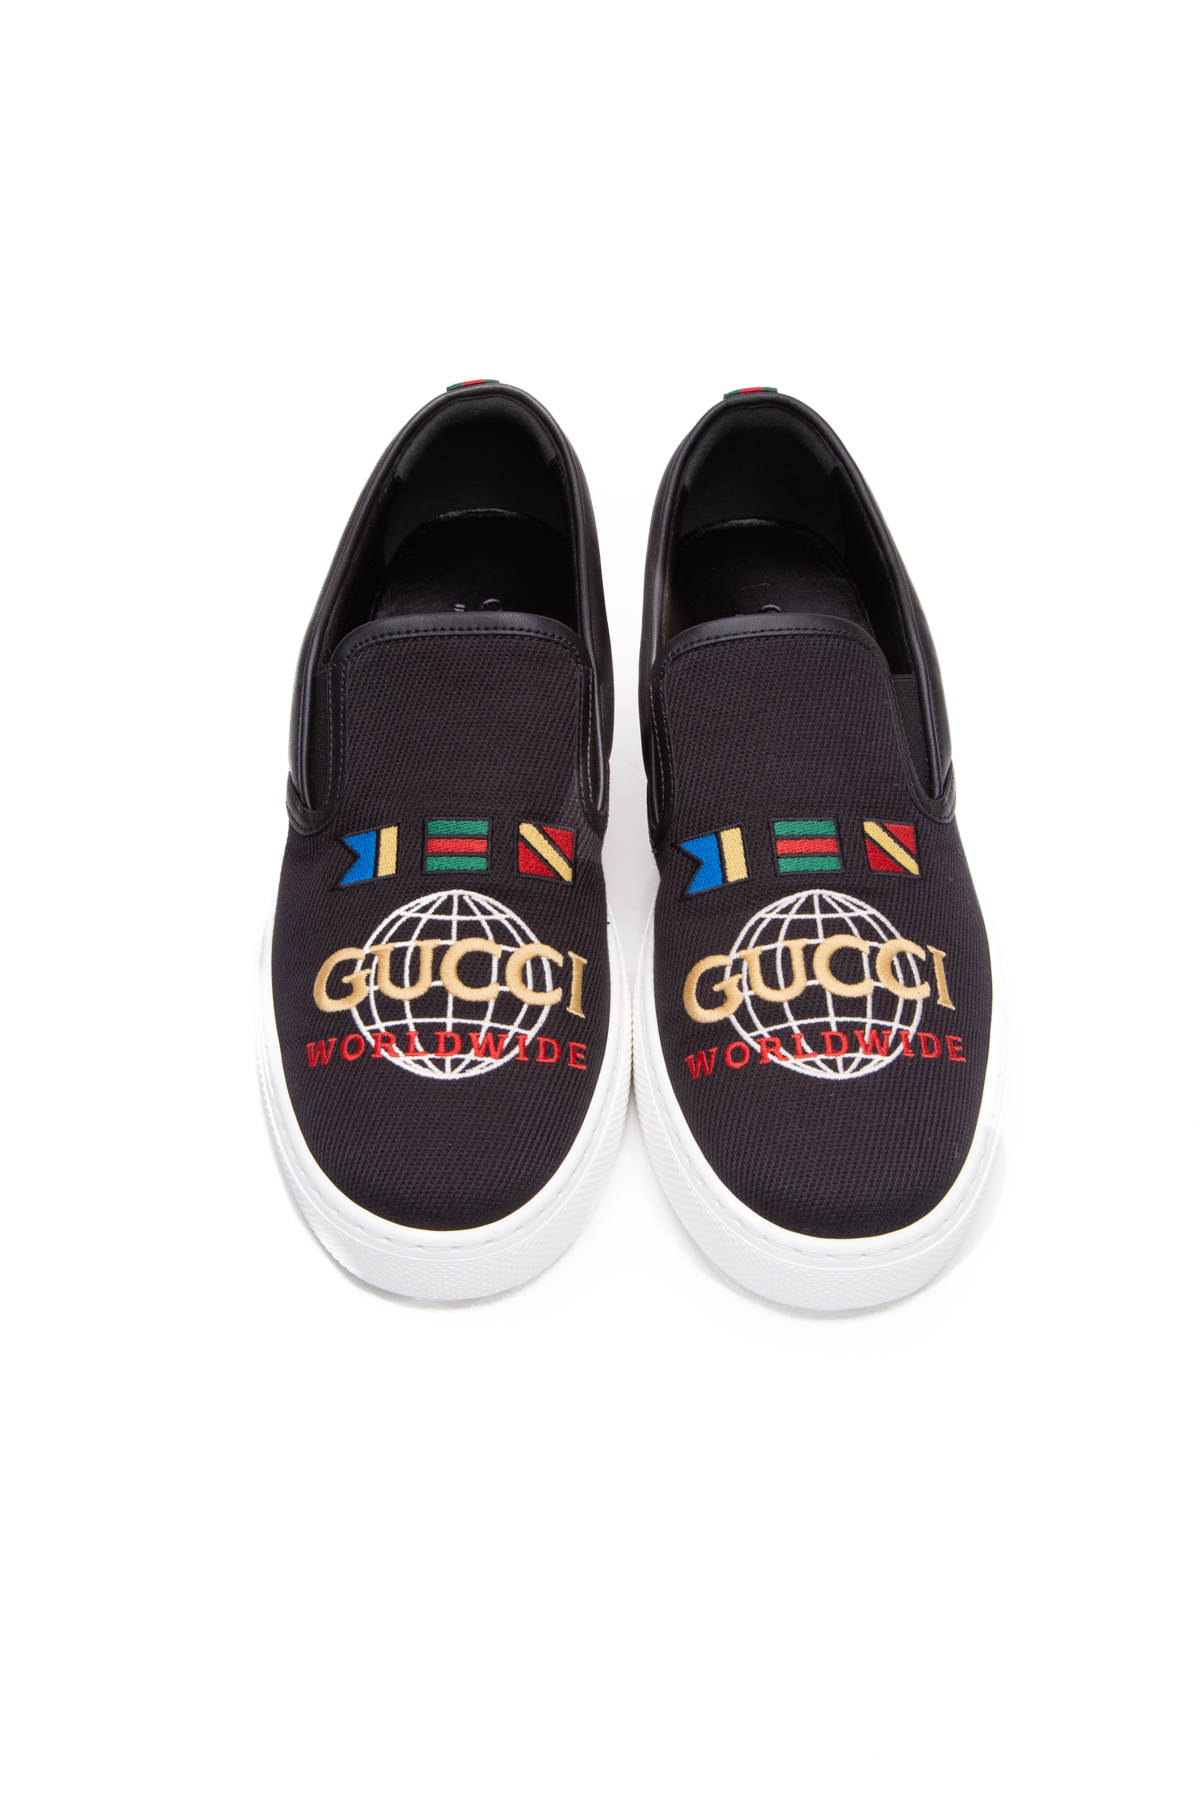 Gucci Dublin Worldwide Slip-On Sneakers - Men's Size 8.5